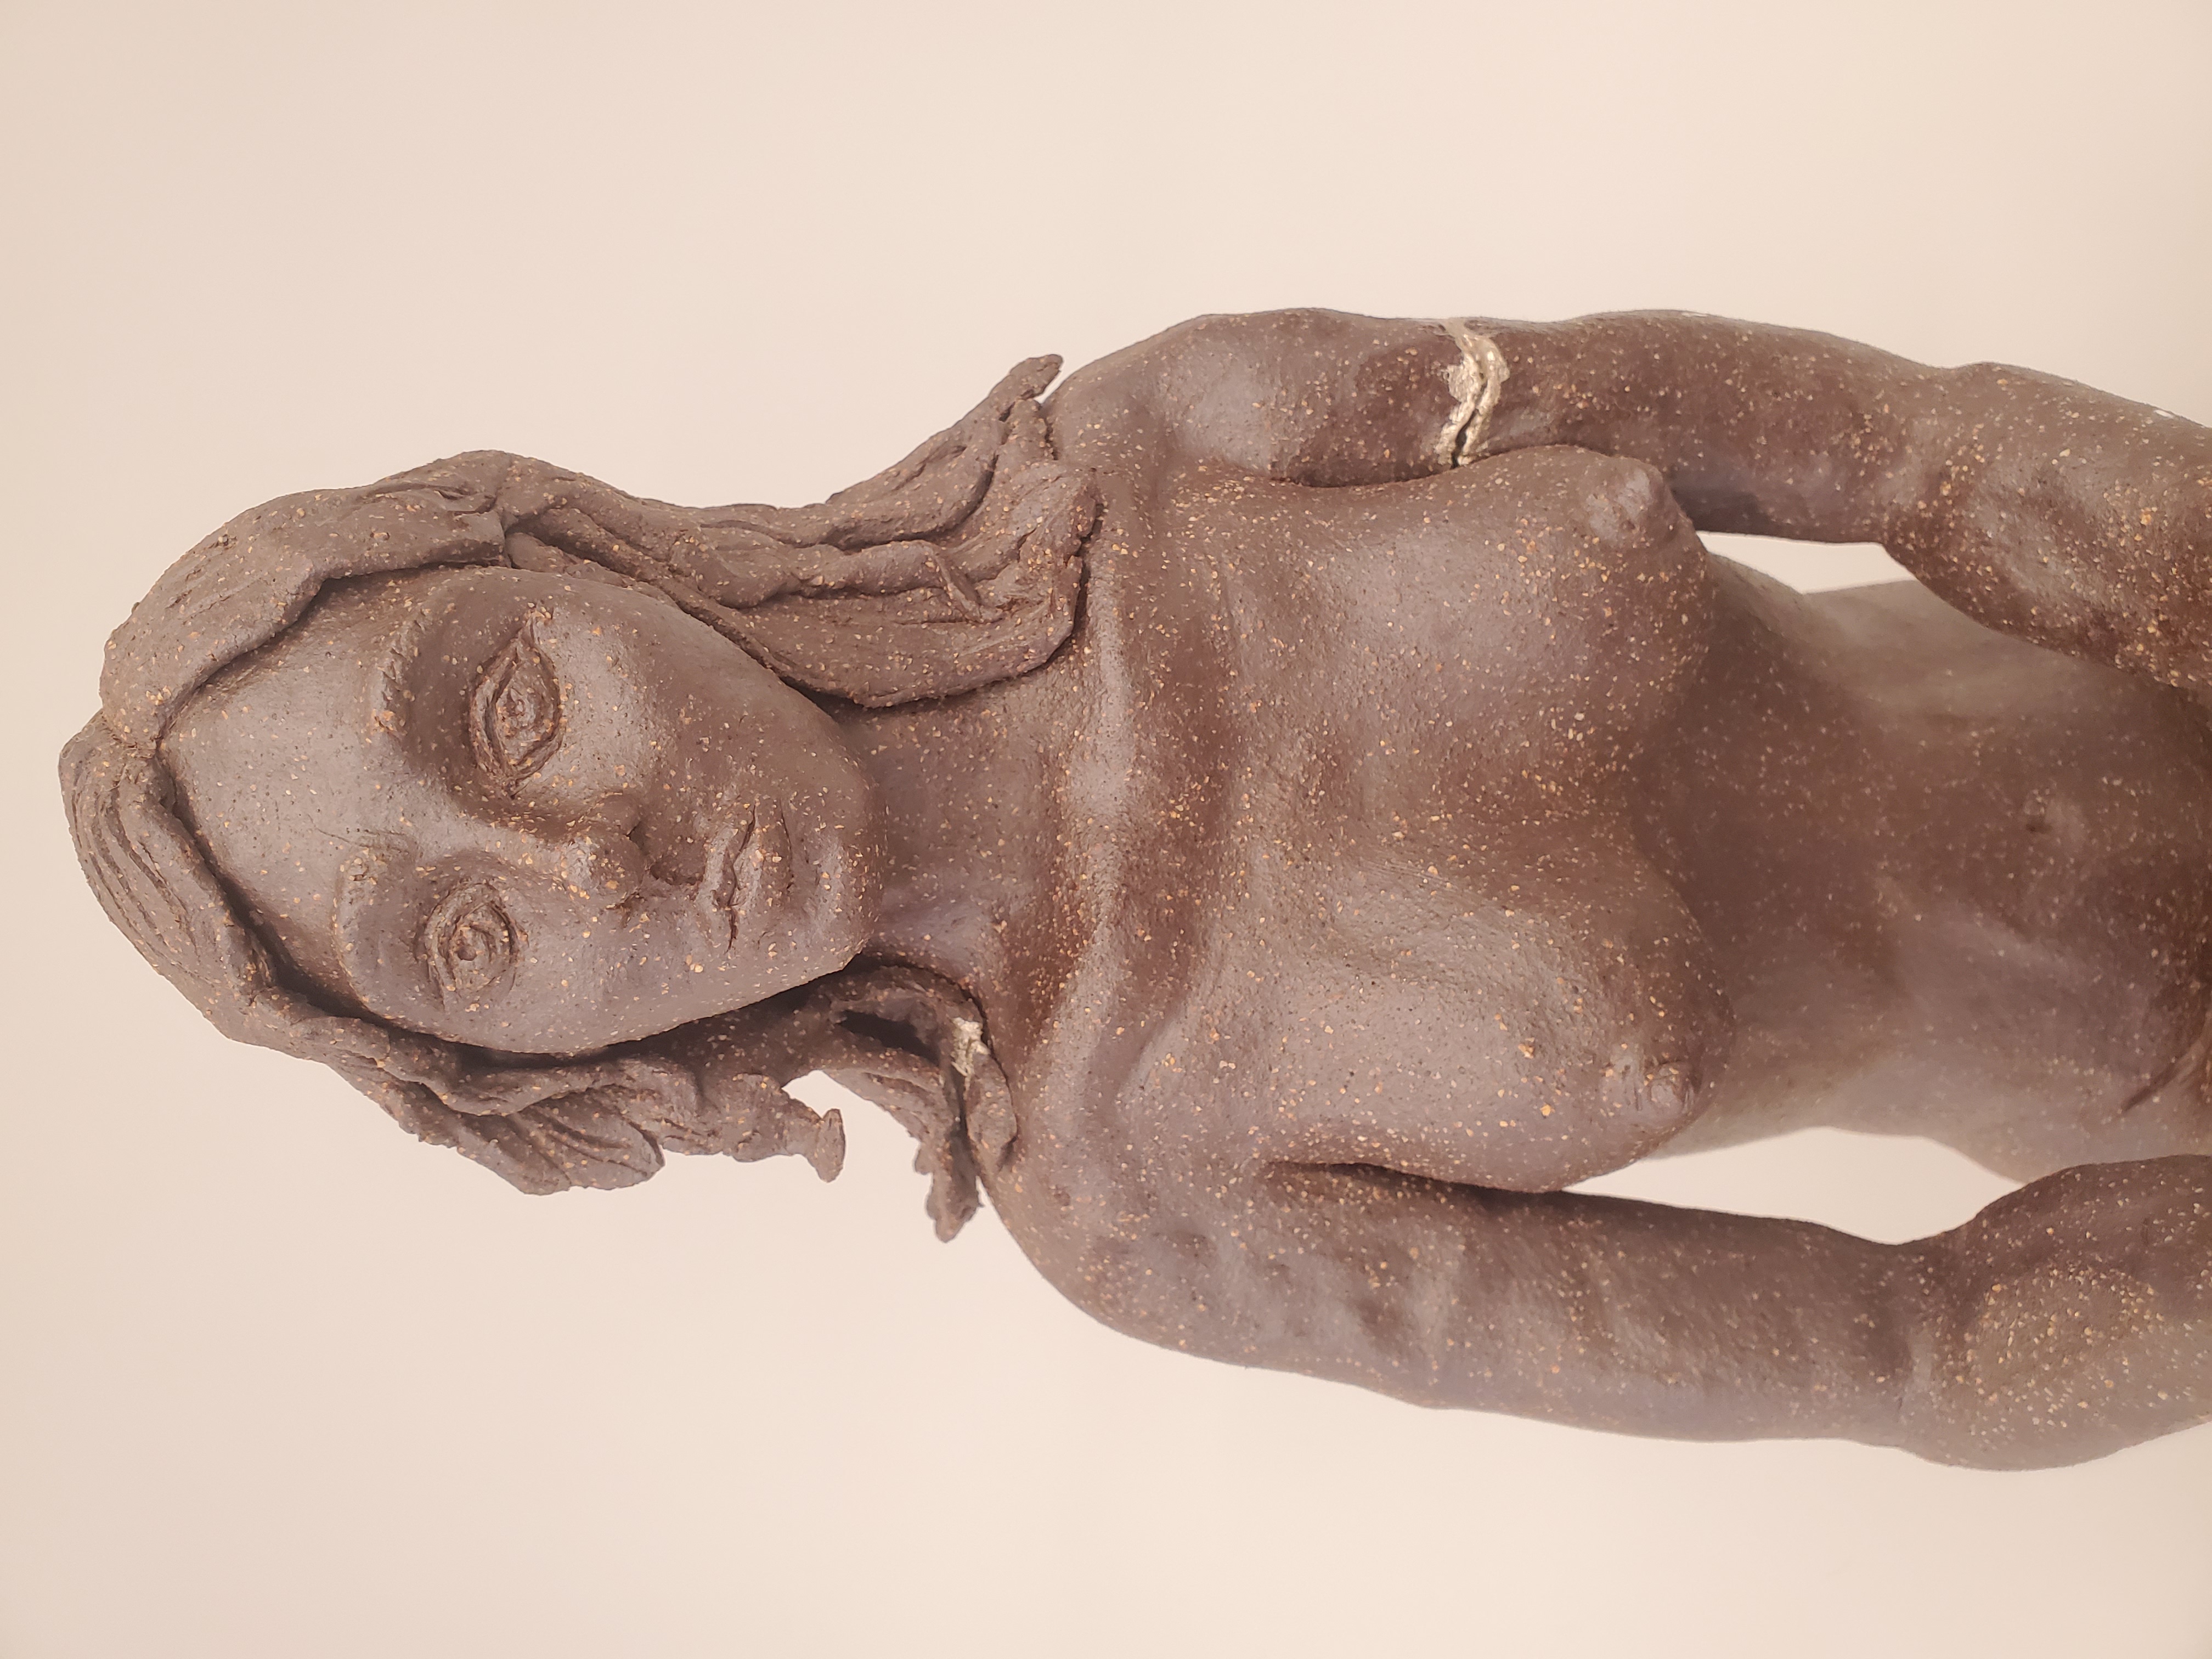 Unbroken, ceramic female sculpture.